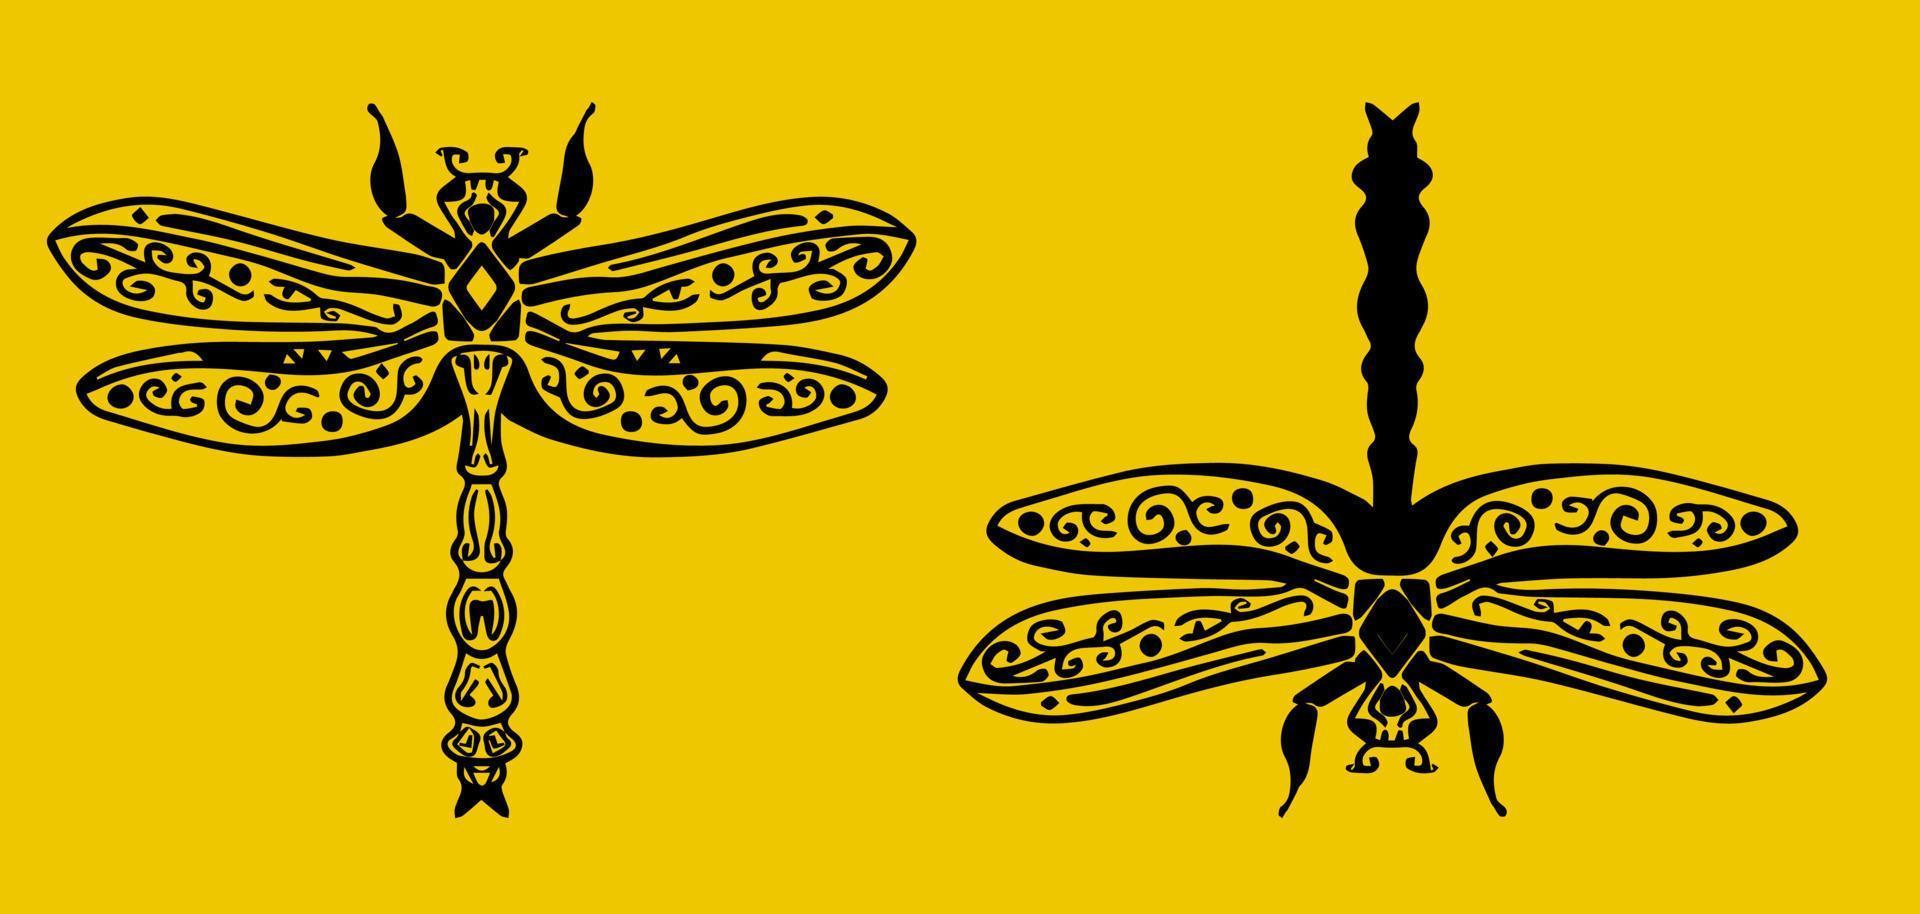 Libélula de gráficos vetoriais de insetos. design mínimo de modelo de logotipo desenhado à mão. vetor